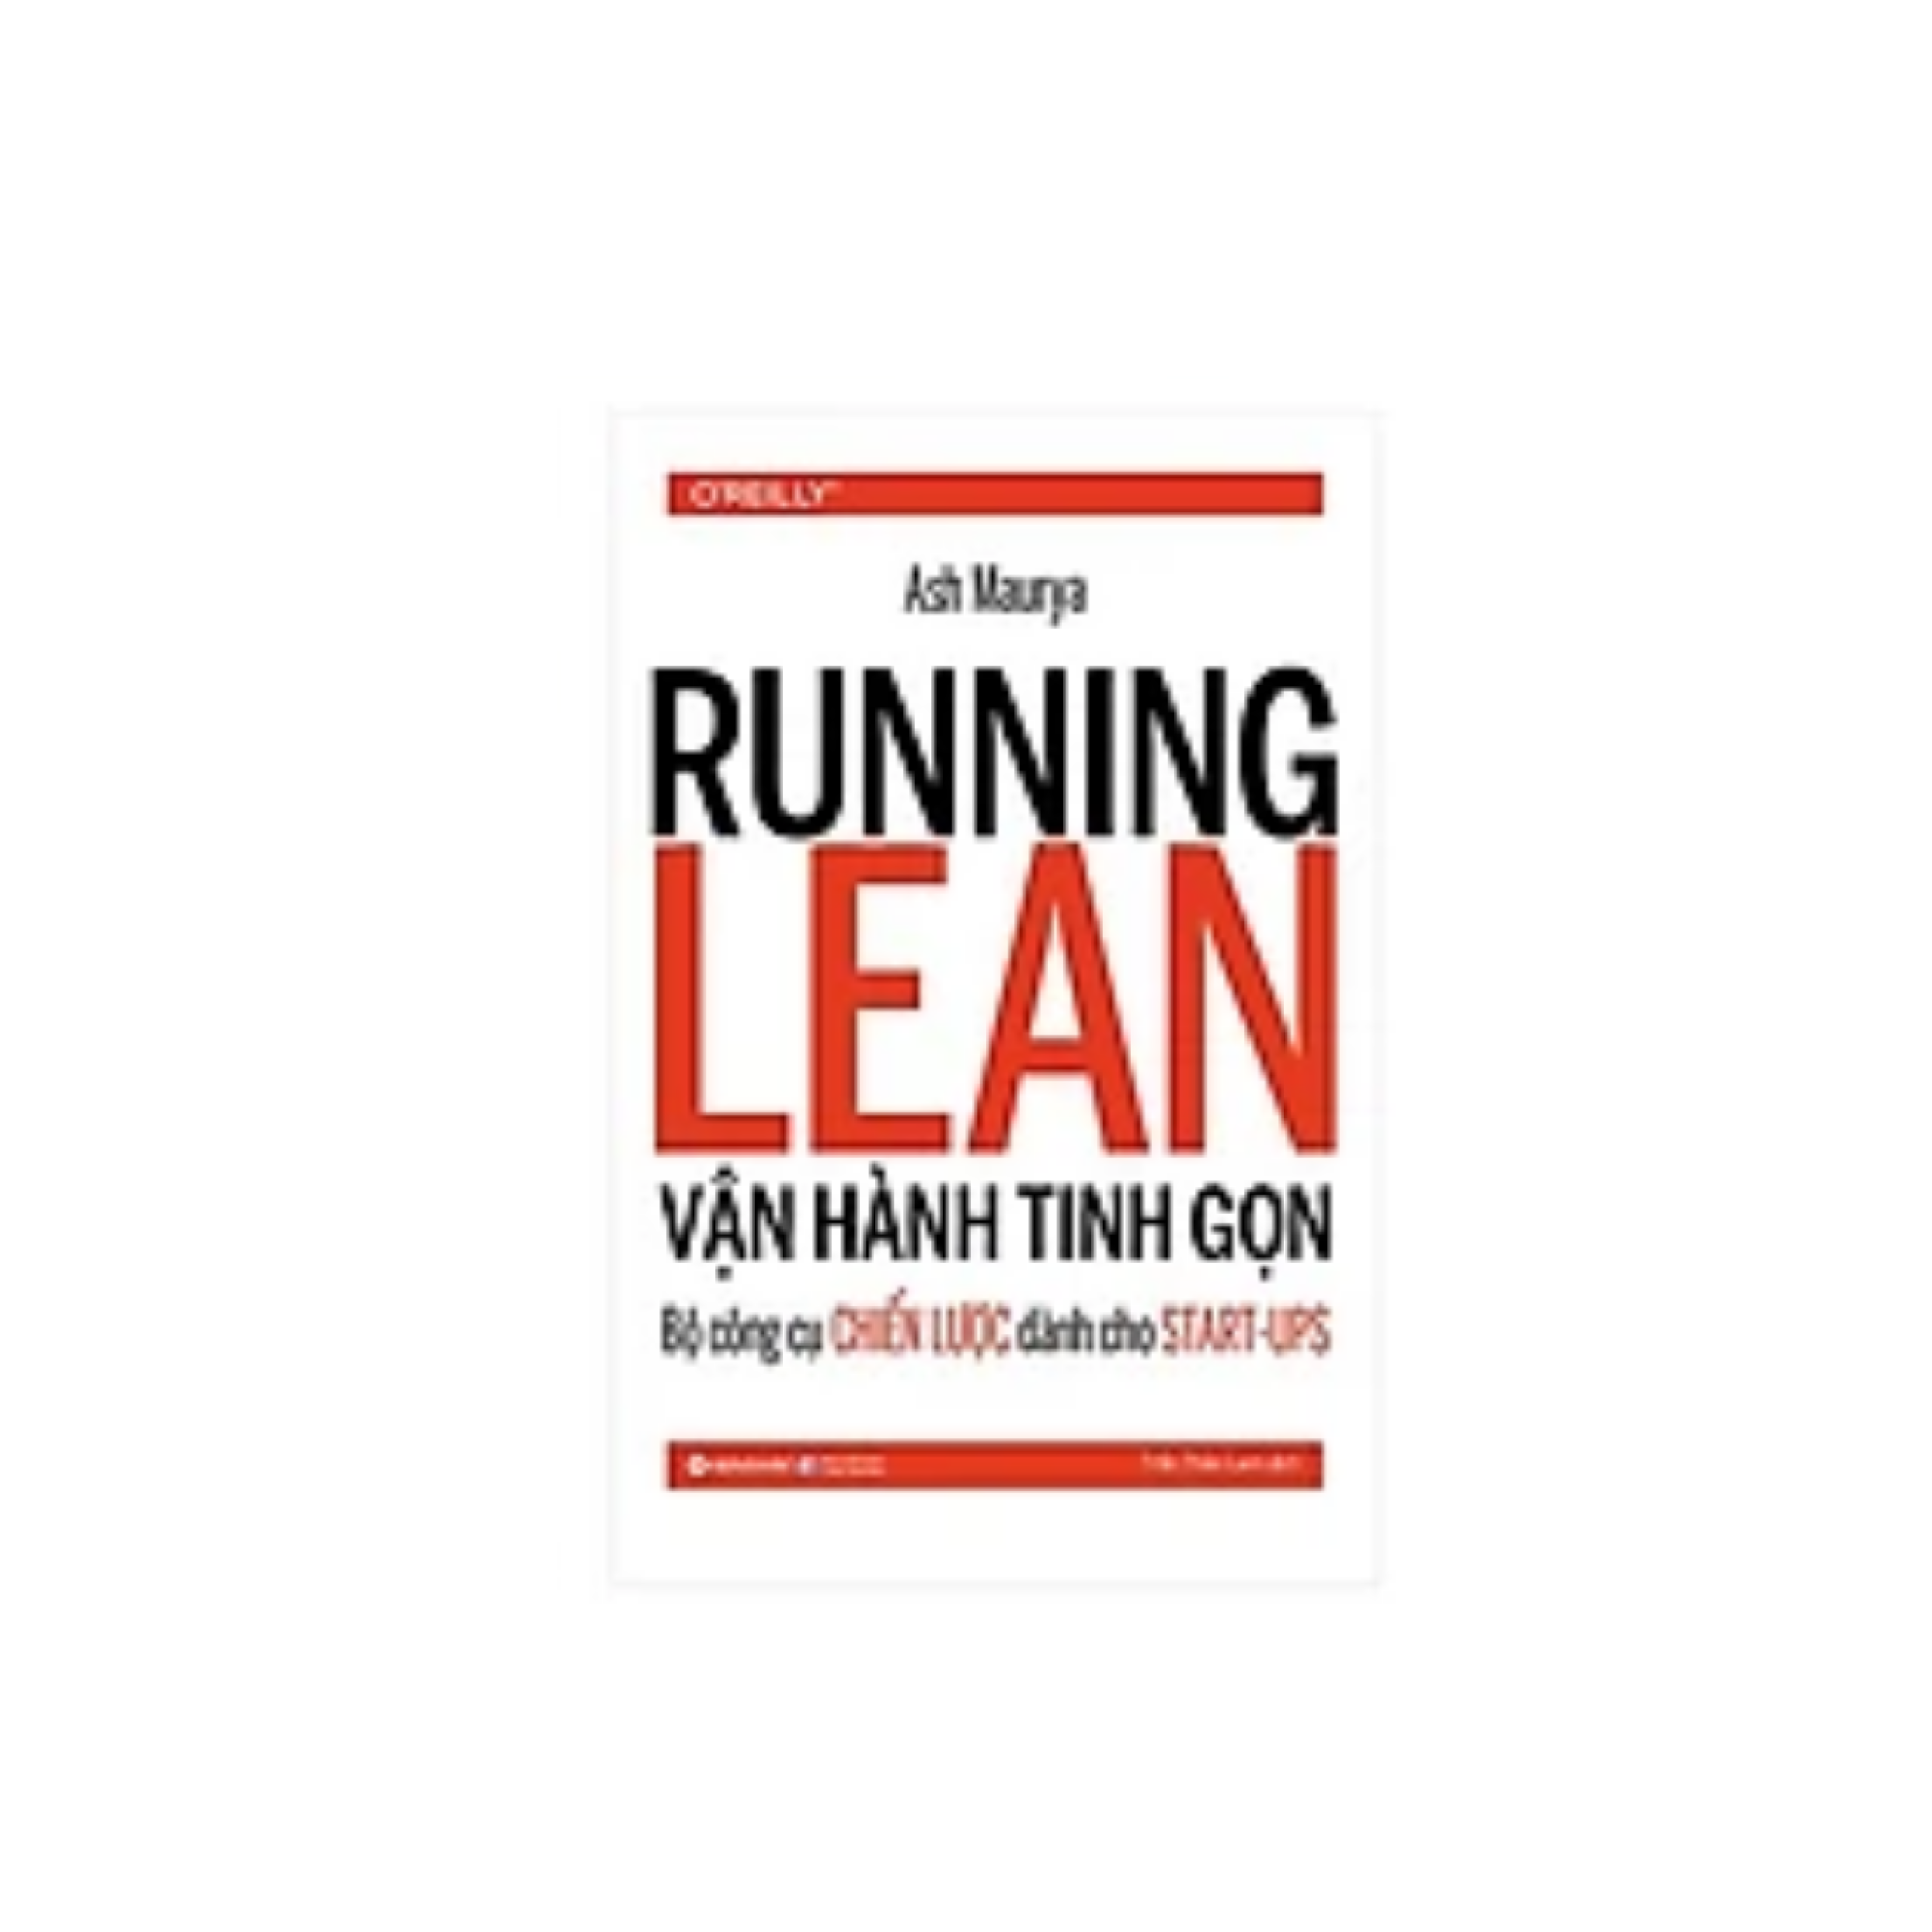 Cuốn Sách Xây Dựng Thương Hiệu Cá Nhân : Running Learn - Vận Hành Tinh Gọn - Bộ Công Cụ Chiến Lược Dành Cho Start Up 